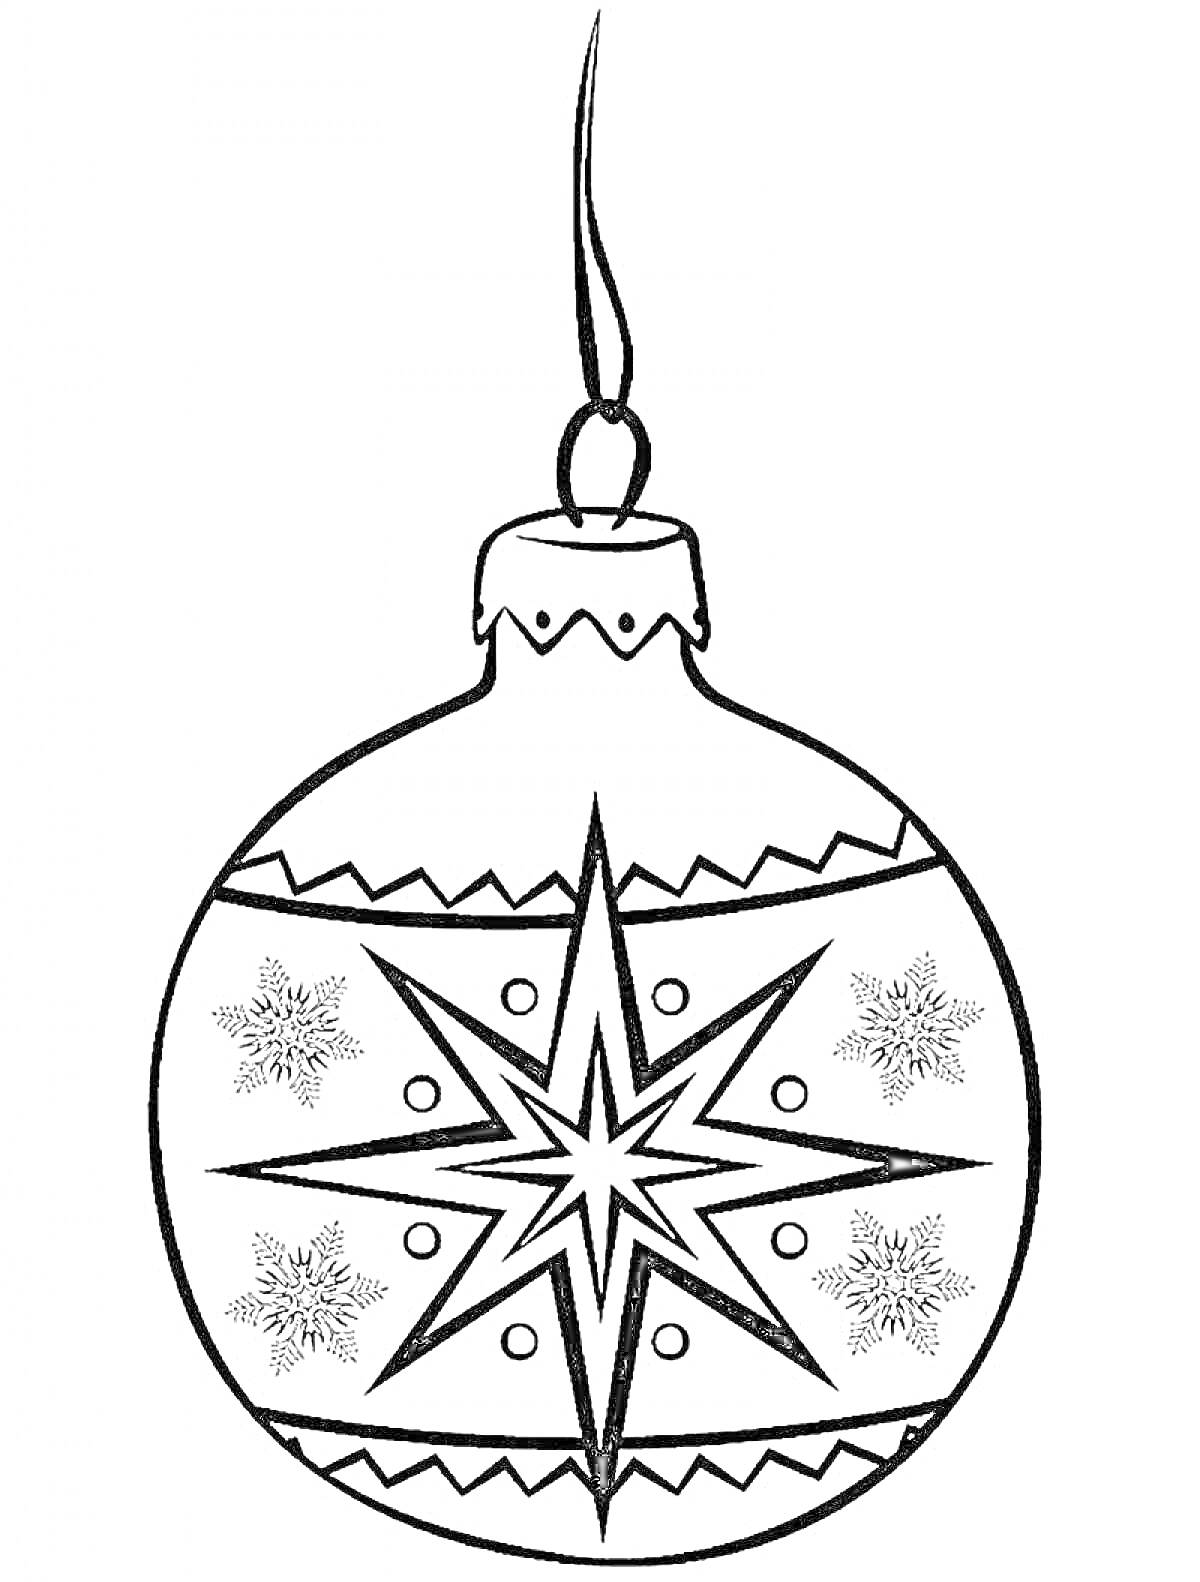 Раскраска Елочная игрушка с верхушкой-завитком, узором в виде крупной звезды в центре, четырьмя снежинками, мелкими кругами и зигзагообразными линиями сверху и снизу